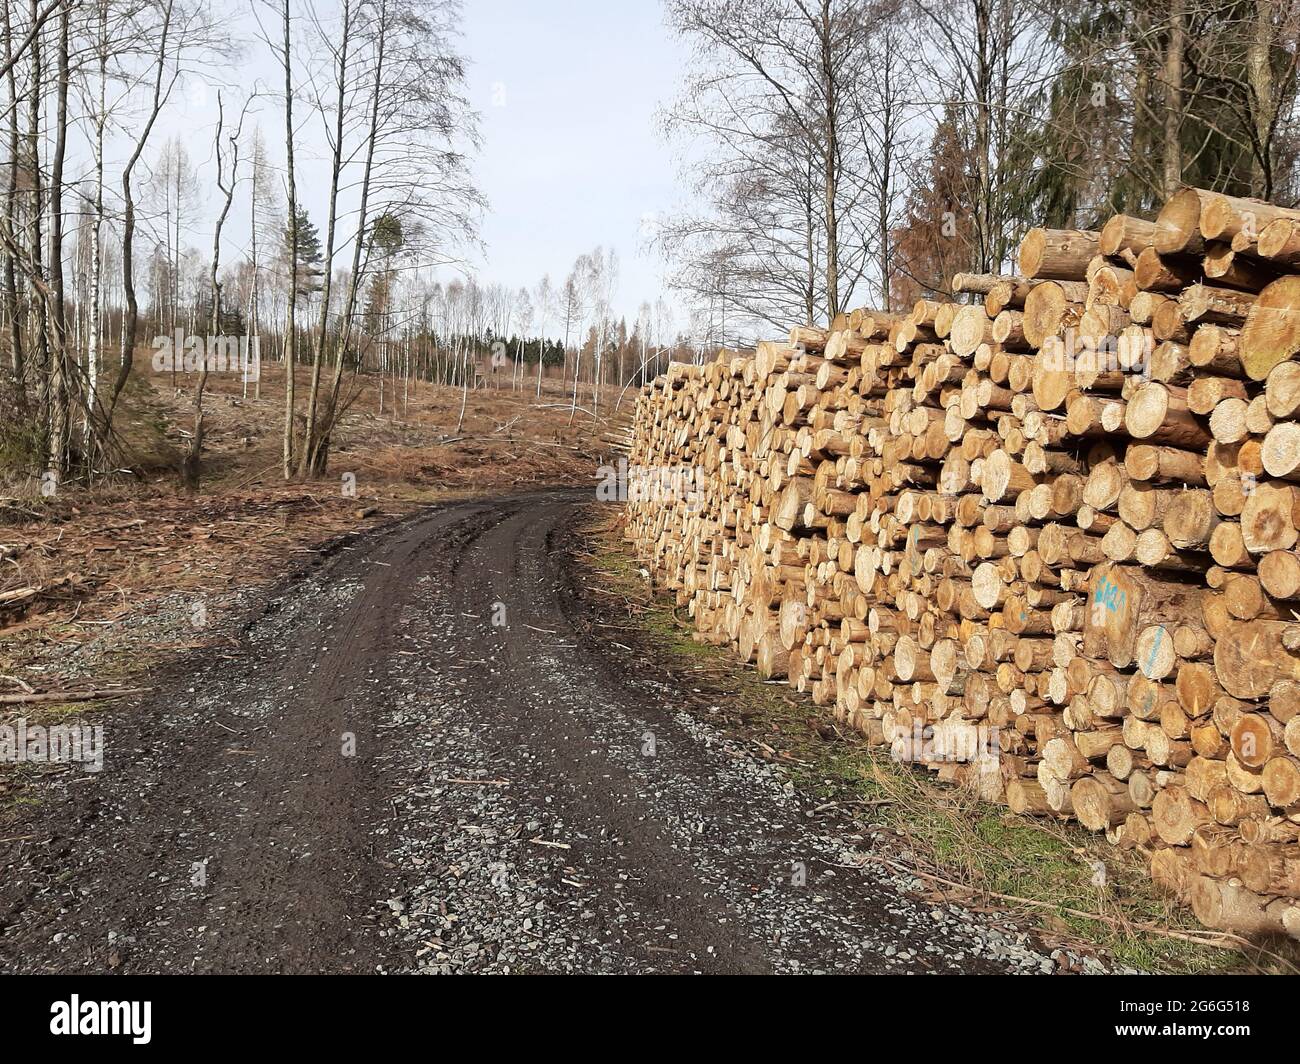 Épinette de Norvège (Picea abies), grumes d'épinette empilées sur une route forestière, Allemagne Banque D'Images